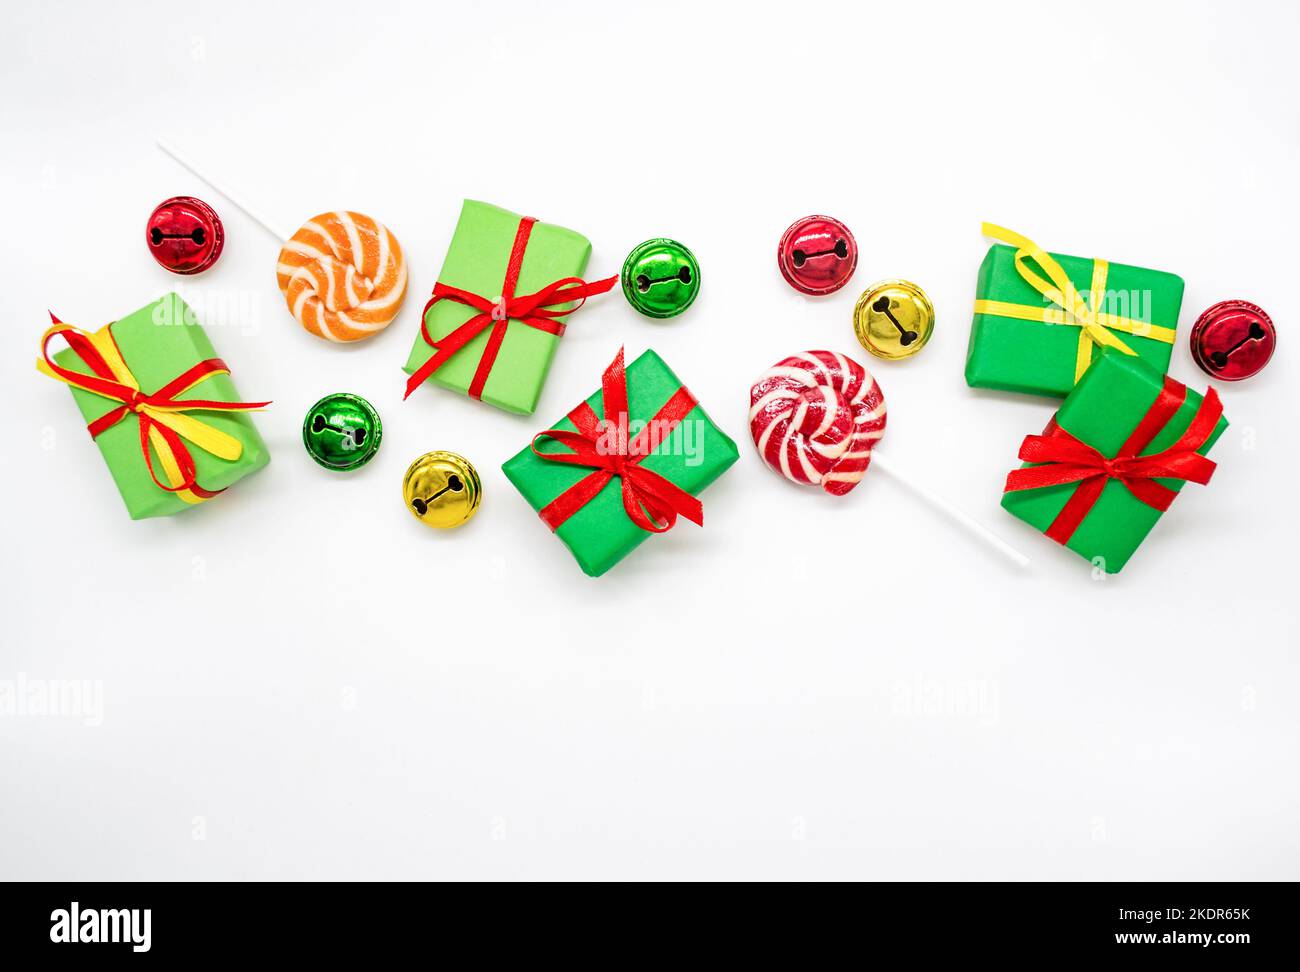 Buone feste: Regali con lollipop e campane rosse, verdi, dorate su sfondo bianco, spazio copia. Il concetto di Natale, le vendite, le feste dei bambini Foto Stock